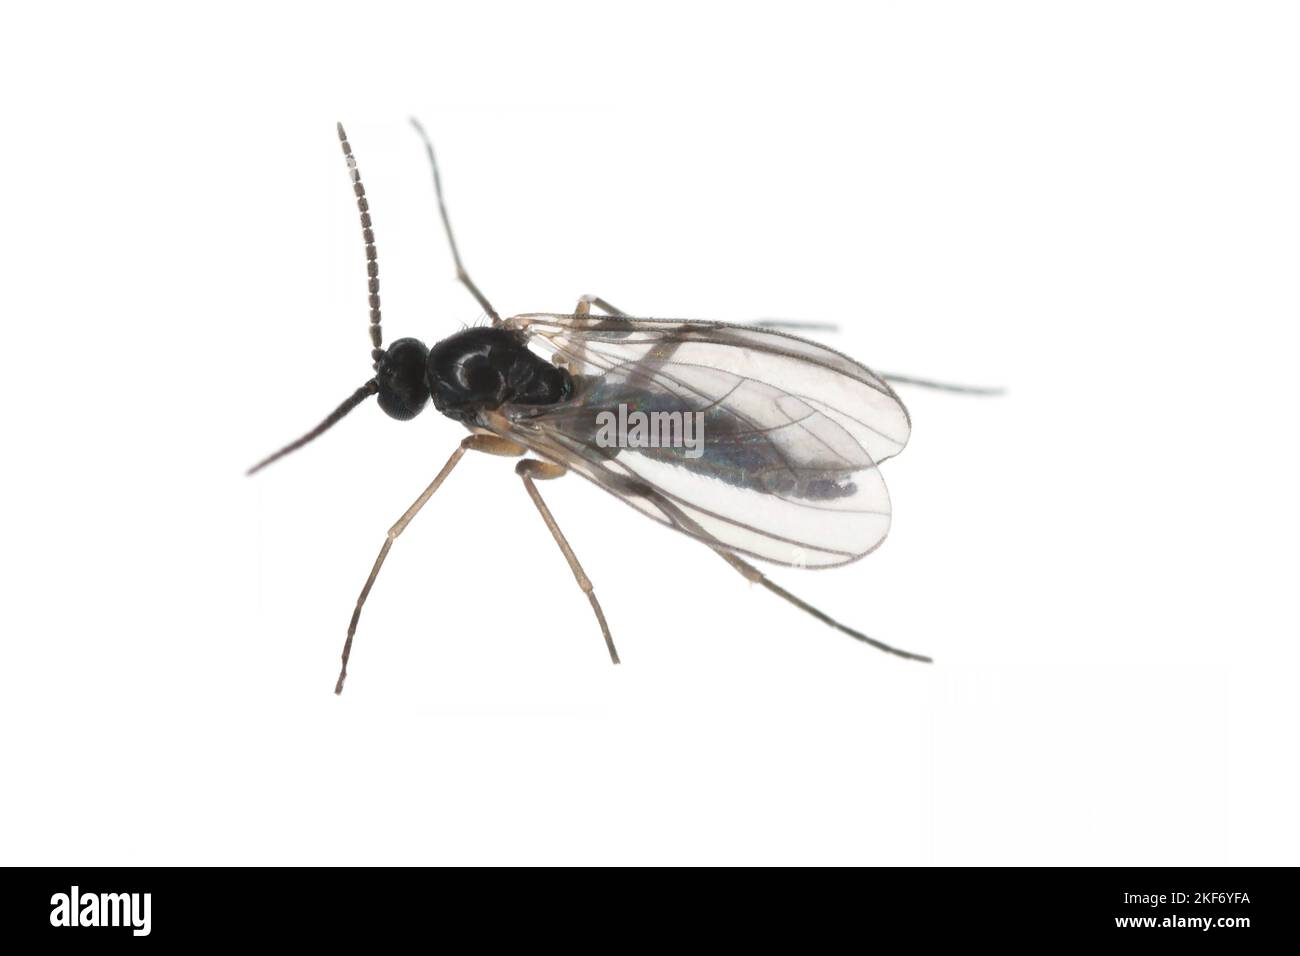 Gnat fungo dalle ali scure, Sciaridae isolati su sfondo bianco, questi insetti si trovano spesso all'interno delle case. Foto Stock